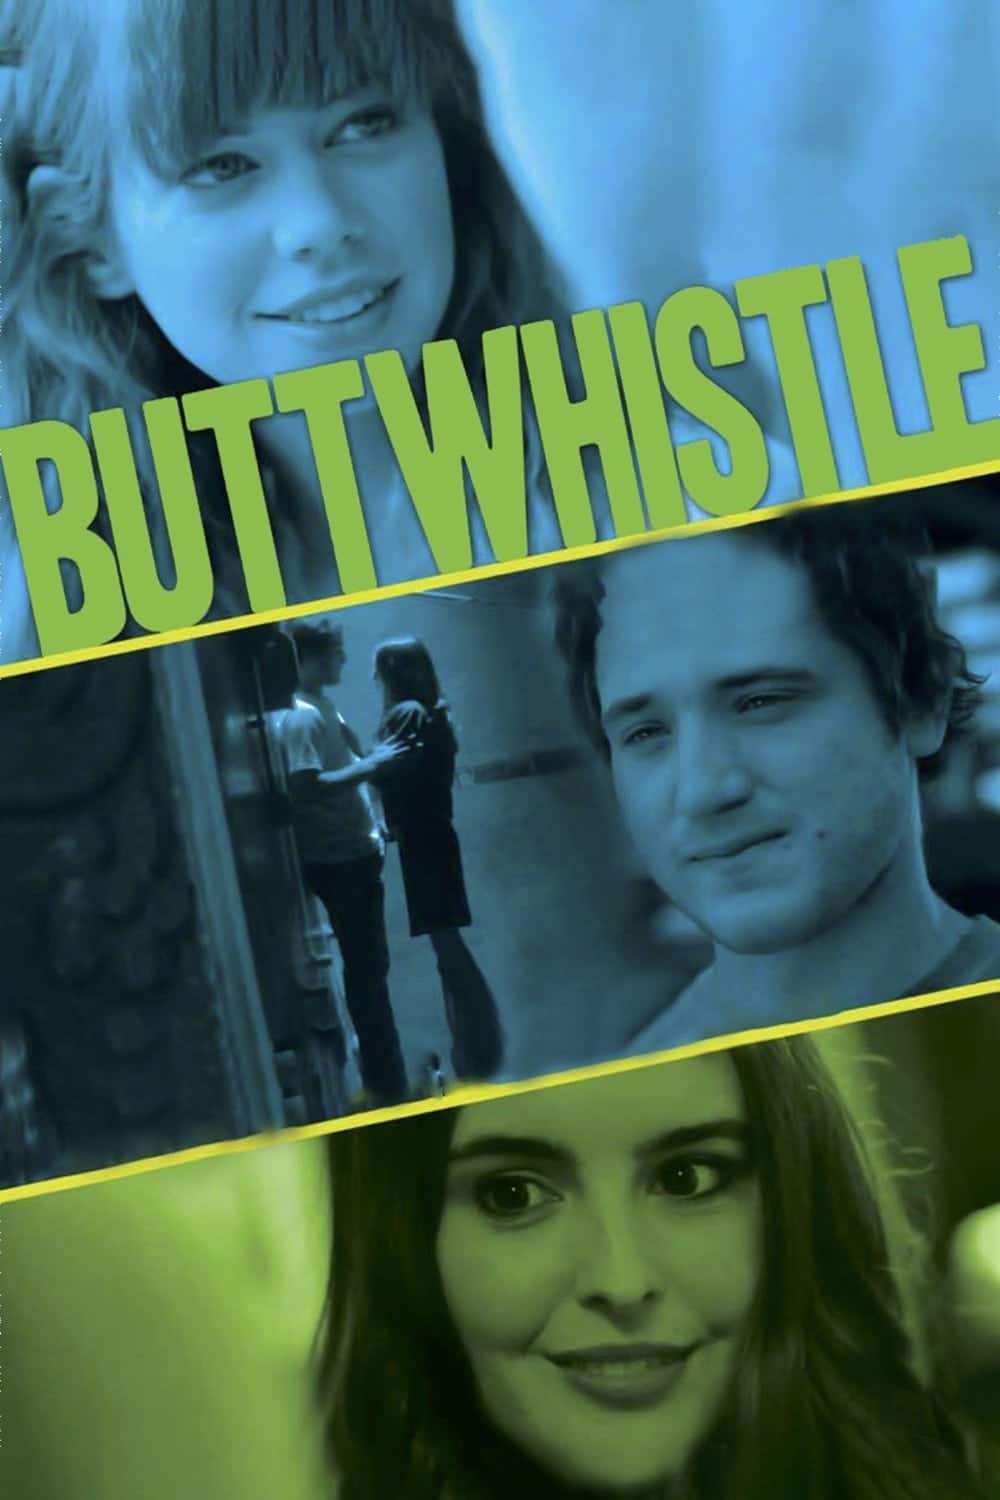 Plakat von "Buttwhistle"